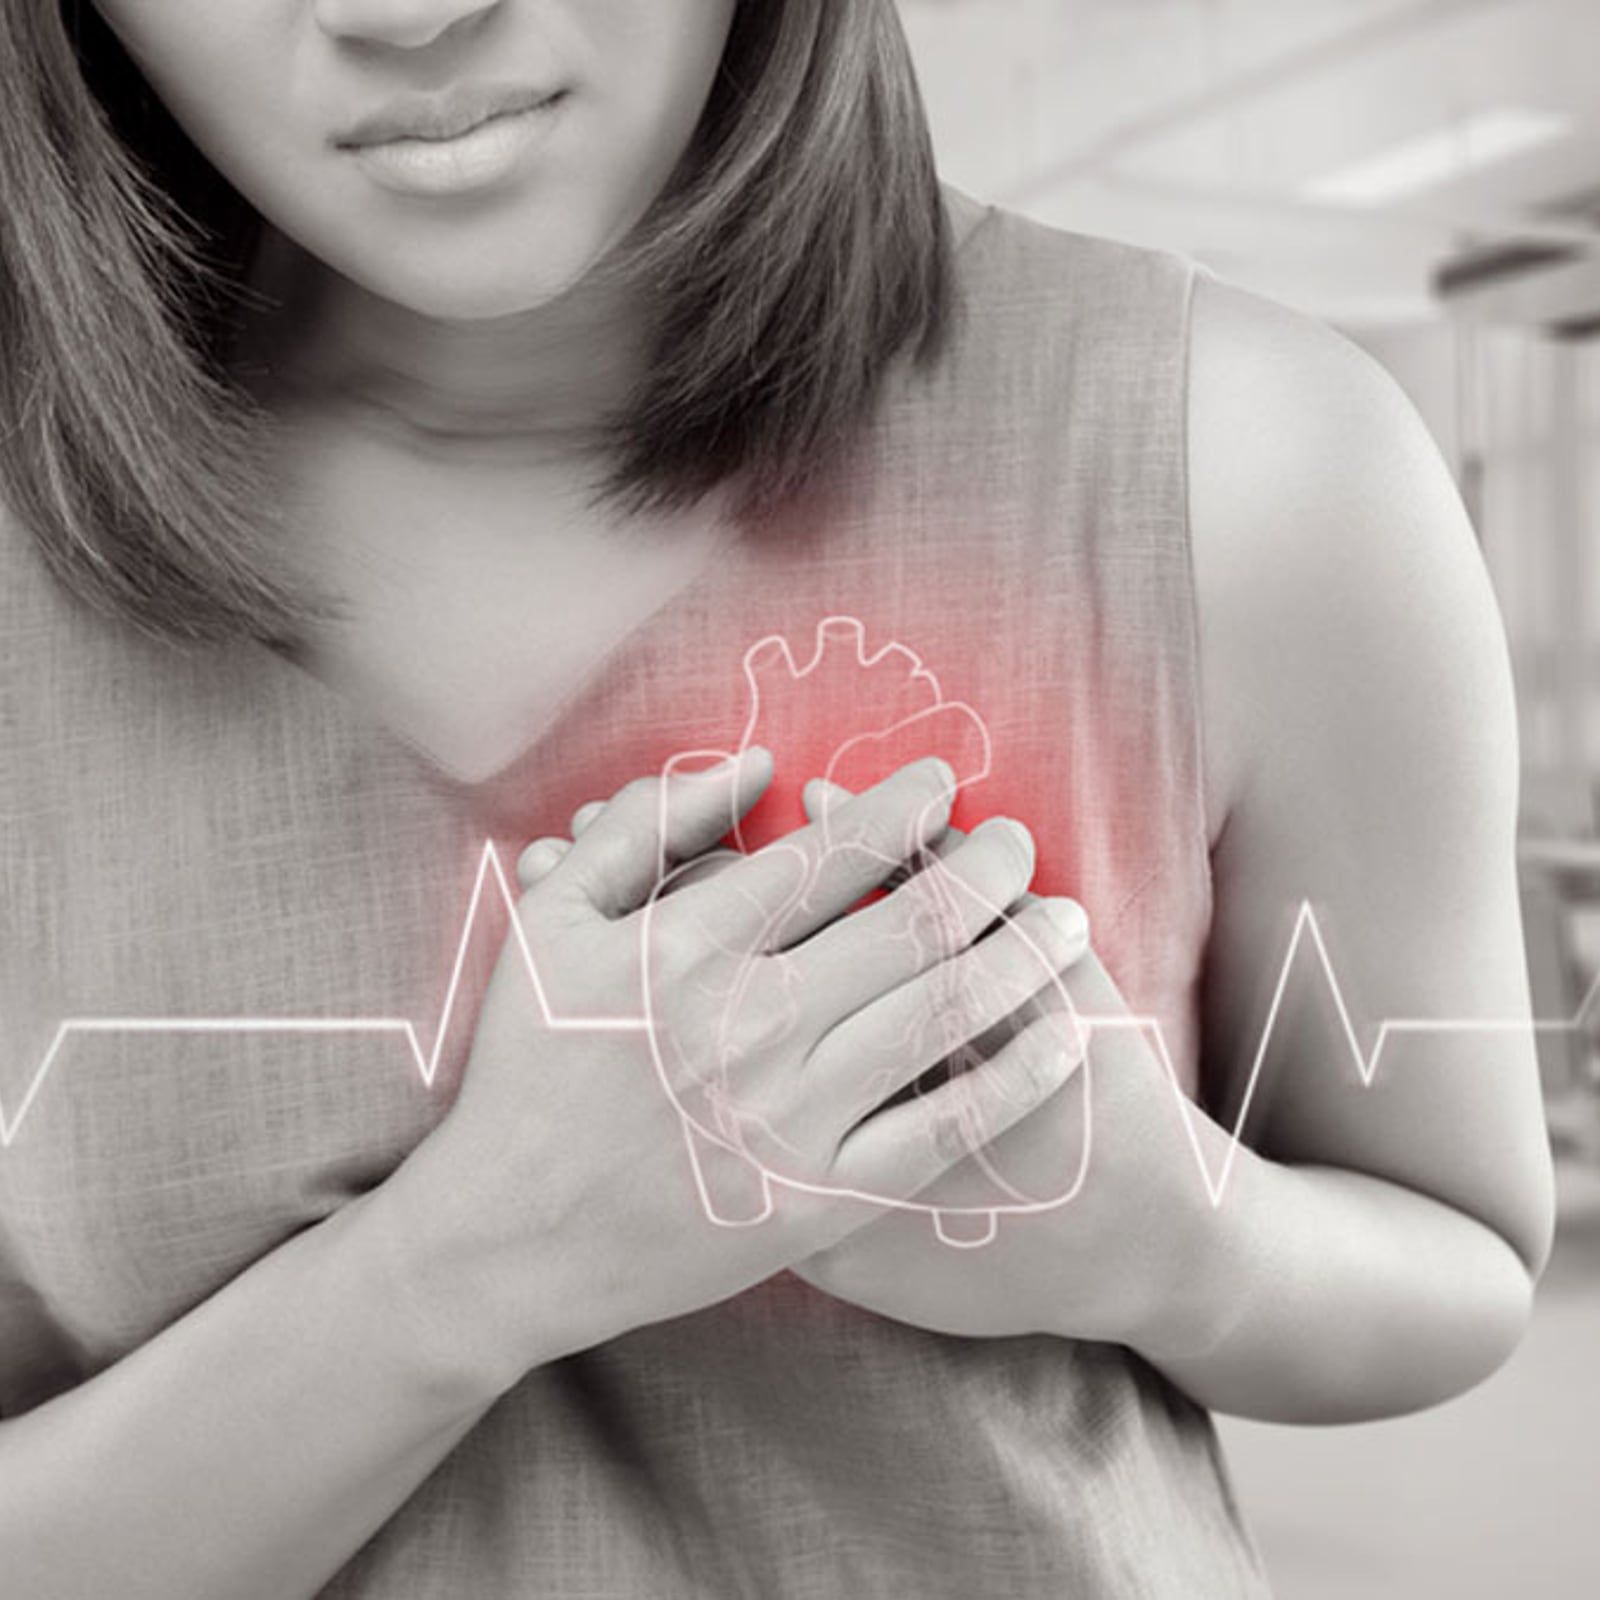 6 Kebiasaan Buruk Ini Bisa Picu Penyakit Jantung di Usia Muda